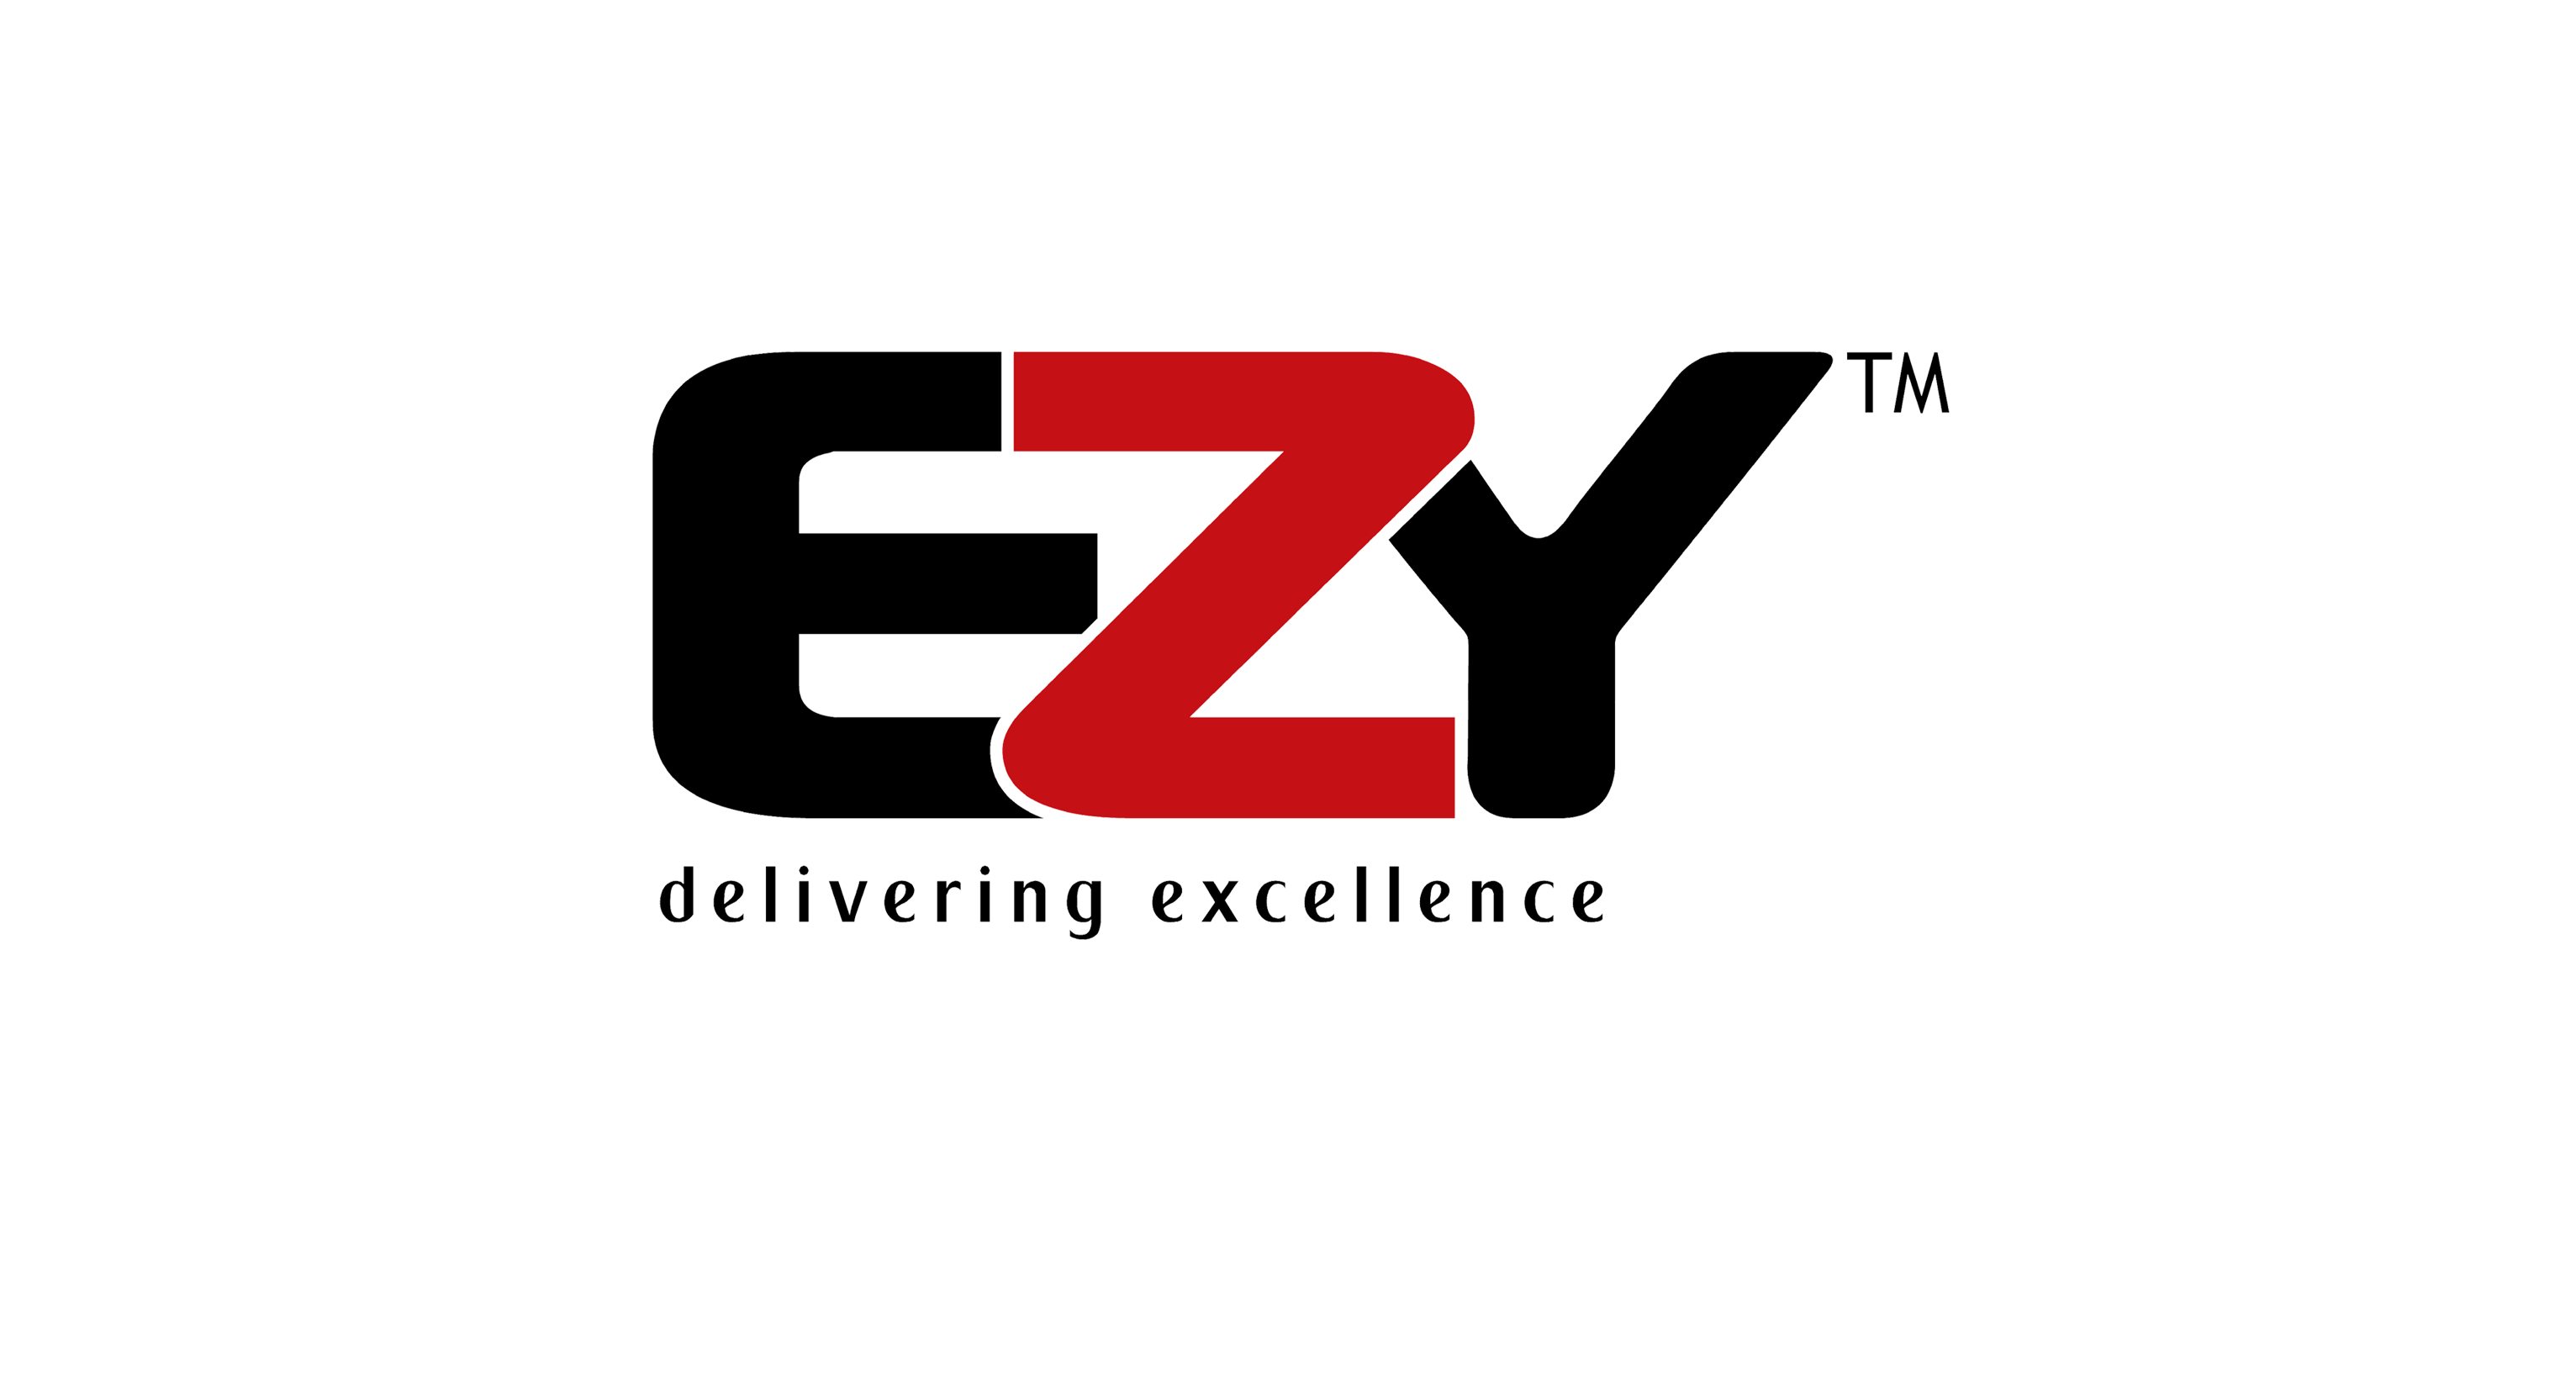 Ezy Logo - EZY Technologies - The Best IT Distribution Network in Pakistan